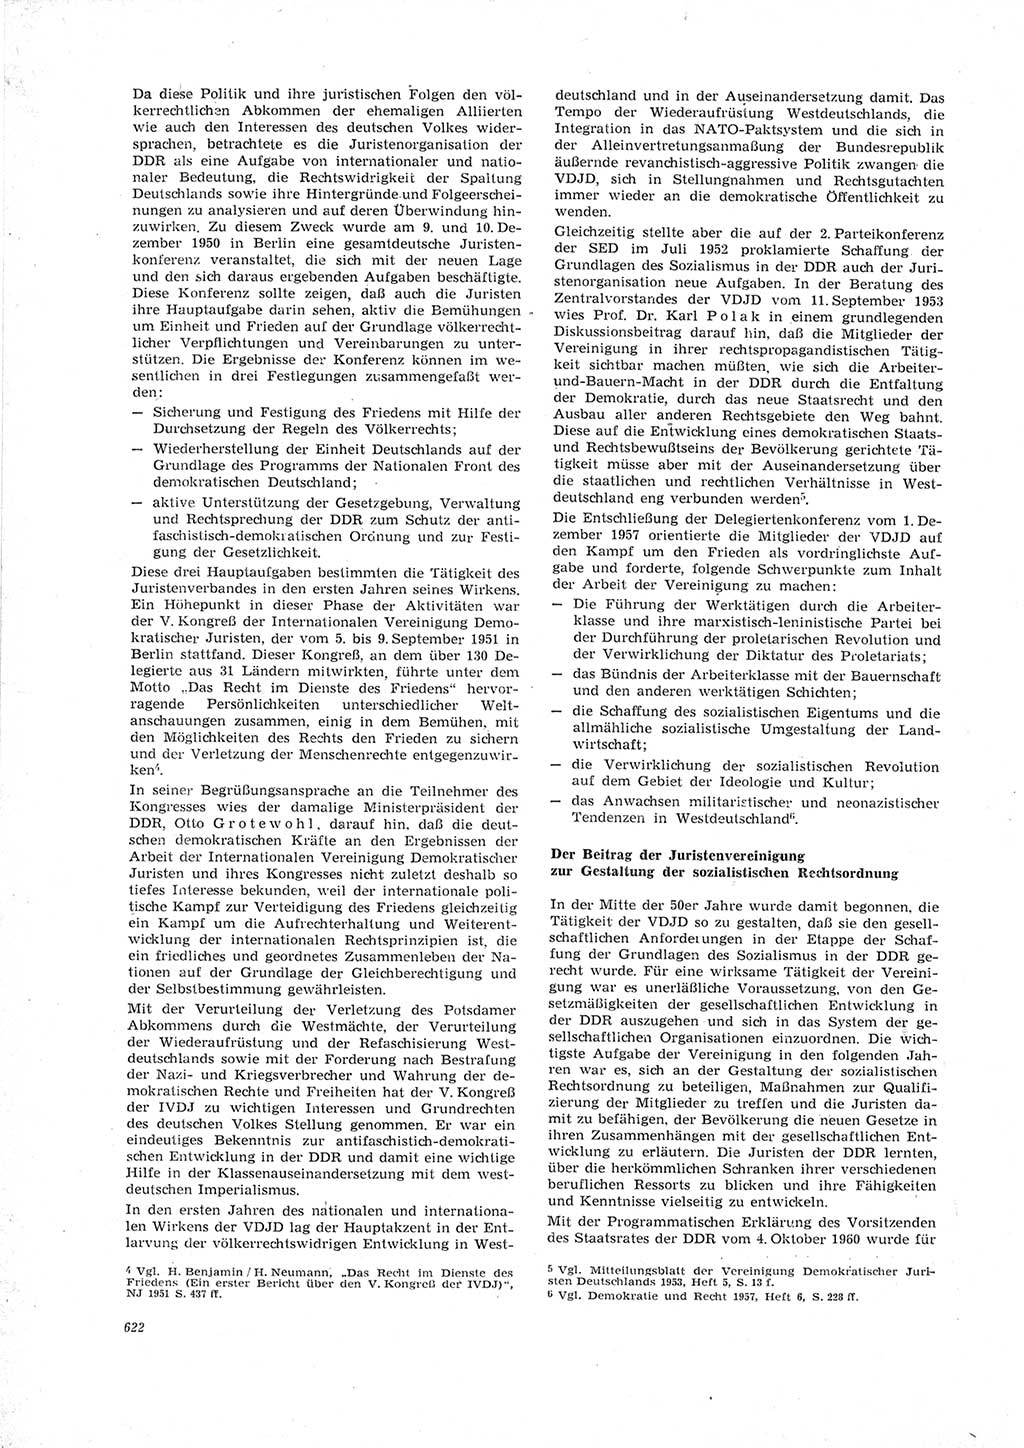 Neue Justiz (NJ), Zeitschrift für Recht und Rechtswissenschaft [Deutsche Demokratische Republik (DDR)], 23. Jahrgang 1969, Seite 622 (NJ DDR 1969, S. 622)